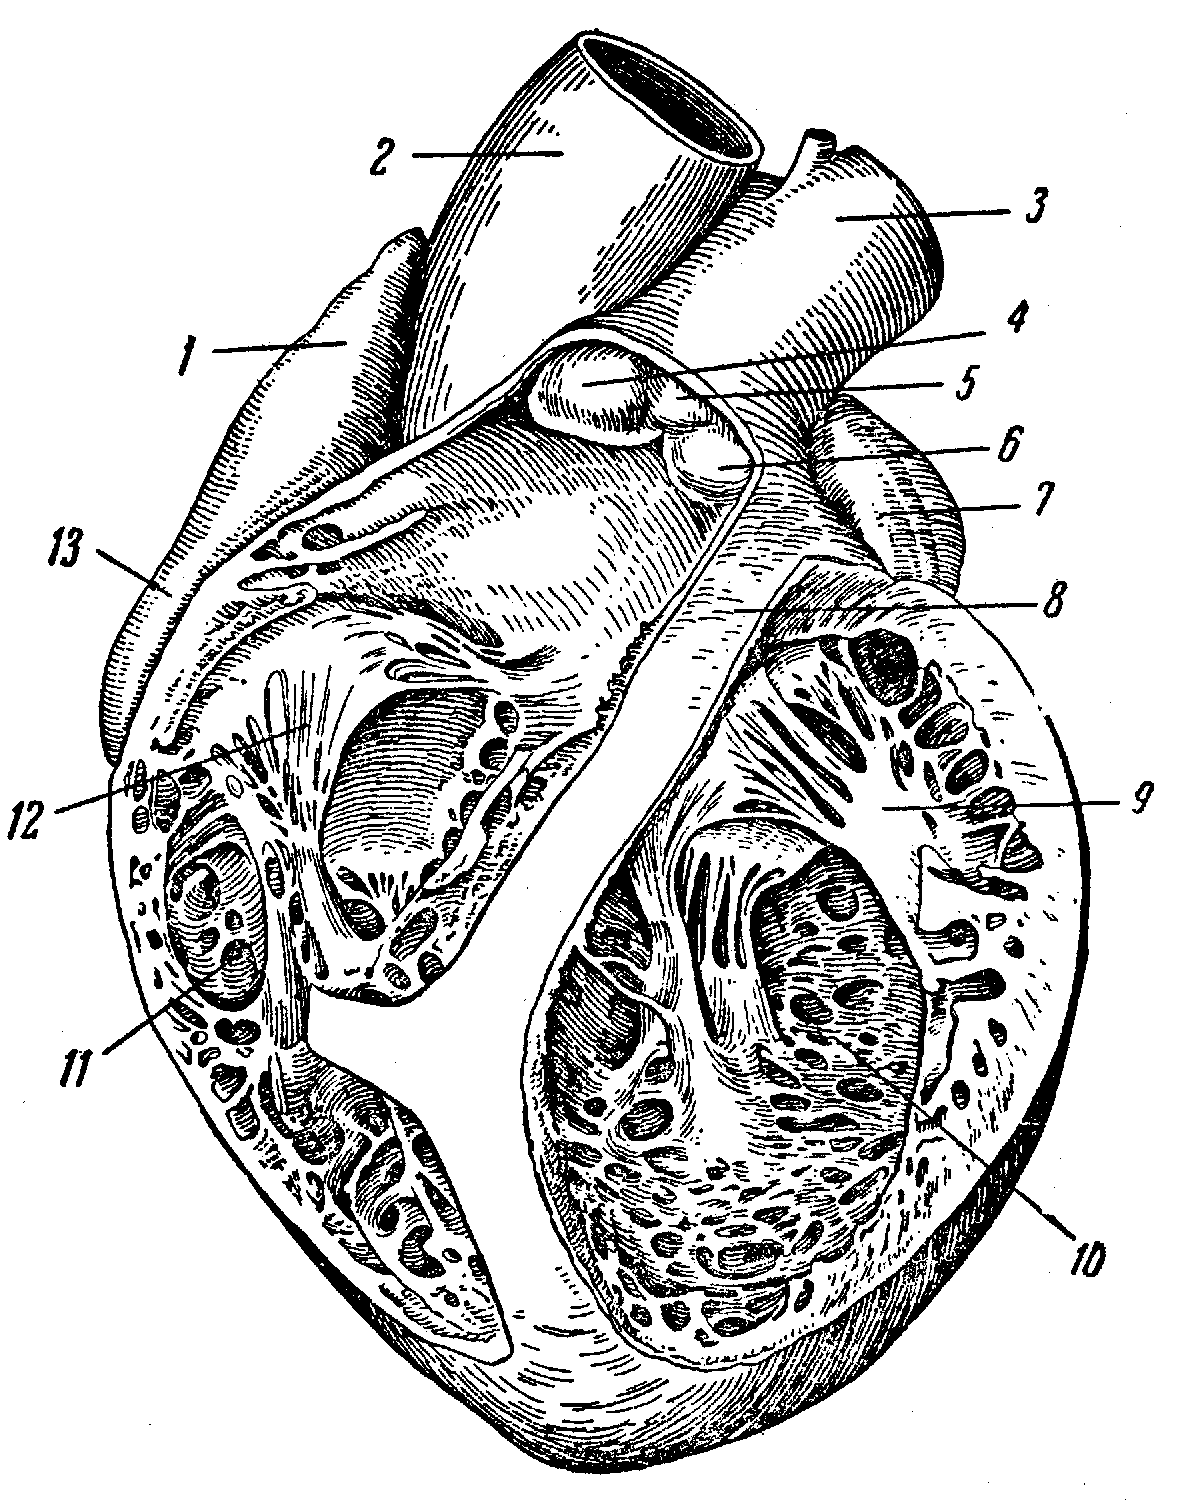 Правый желудочек отделен от правого предсердия. Сердце свиньи анатомия. Вскрытый правый желудочек. Анатомические образования левого предсердия. Правое предсердие и правый желудочек.